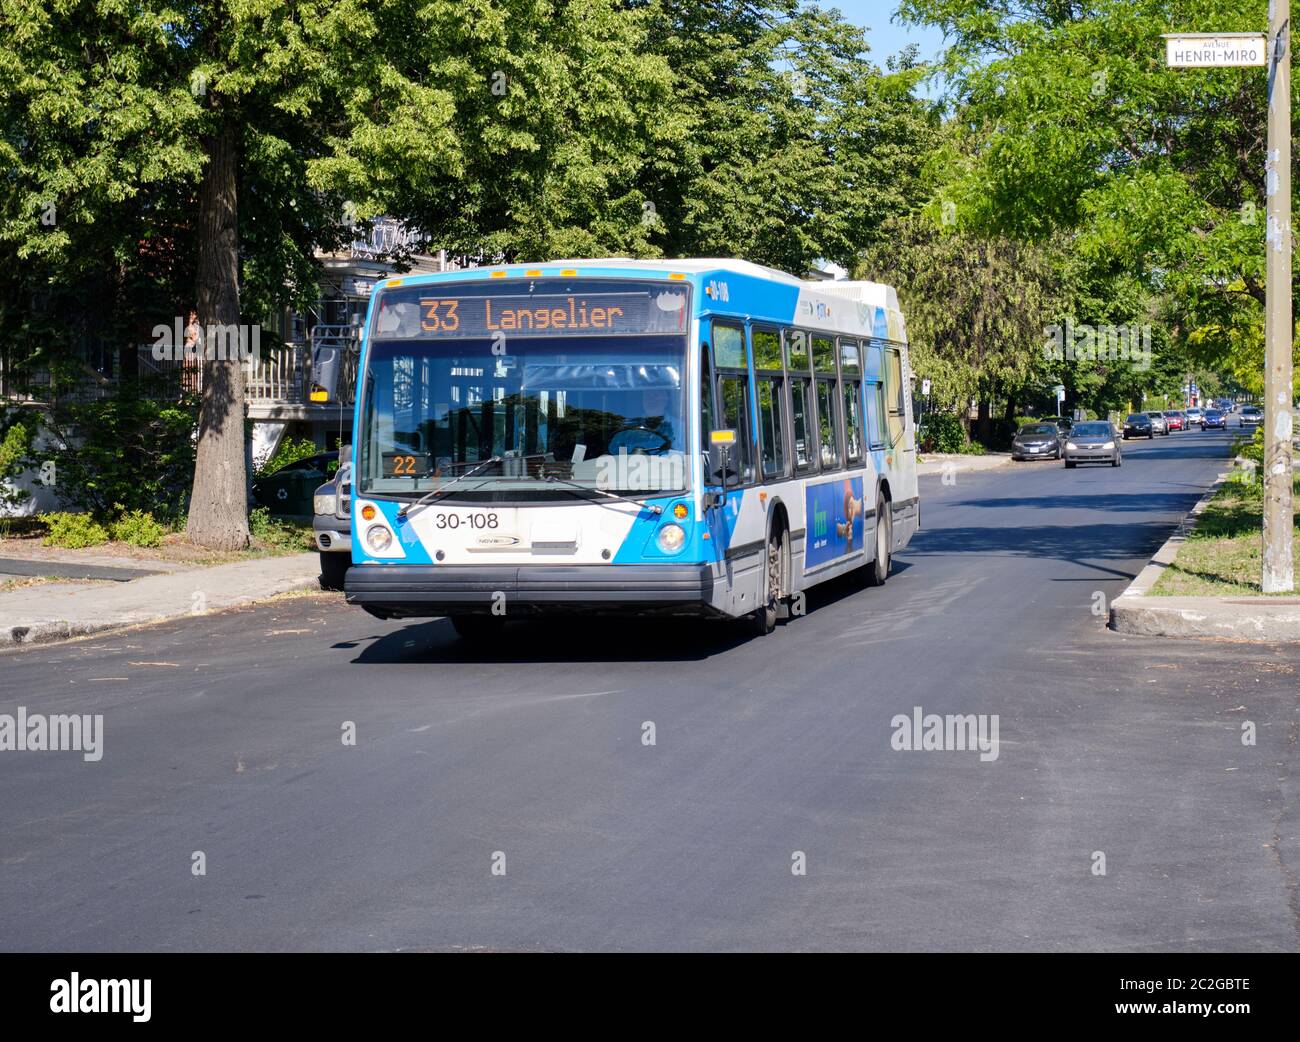 Montreal, Kanada. Juni 15, 2020. Ein Montreal STM Stadtbus, Nummer 33 Langelier, fährt an sonnigen Sommertagen eine Straße entlang Stockfoto